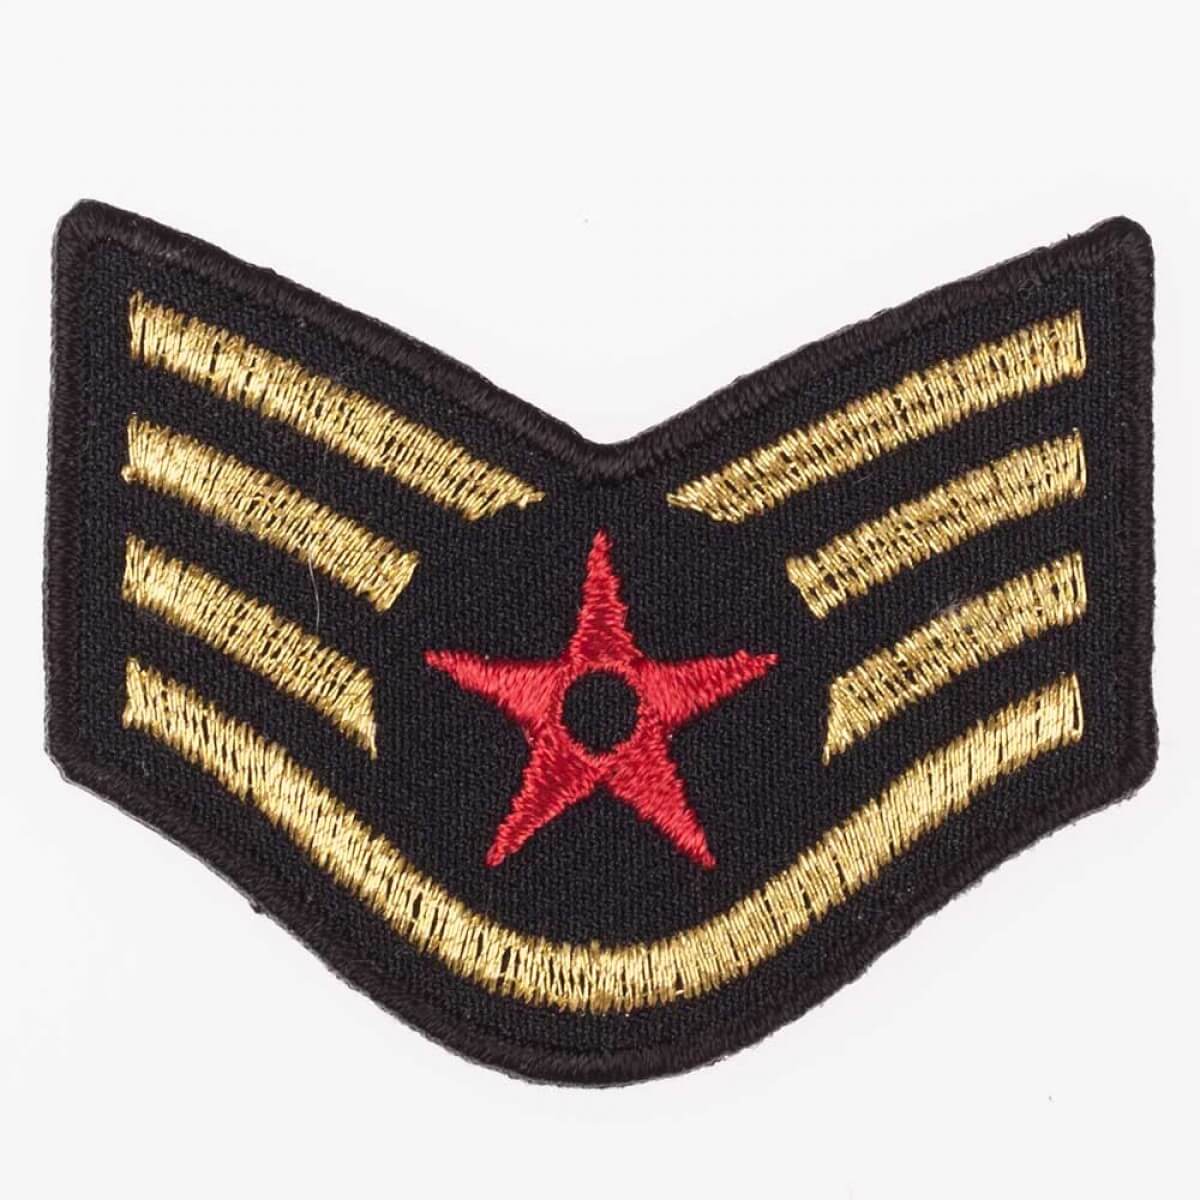 Patch insigne militaire écusson insigne avec strass Bügelbild étoile 